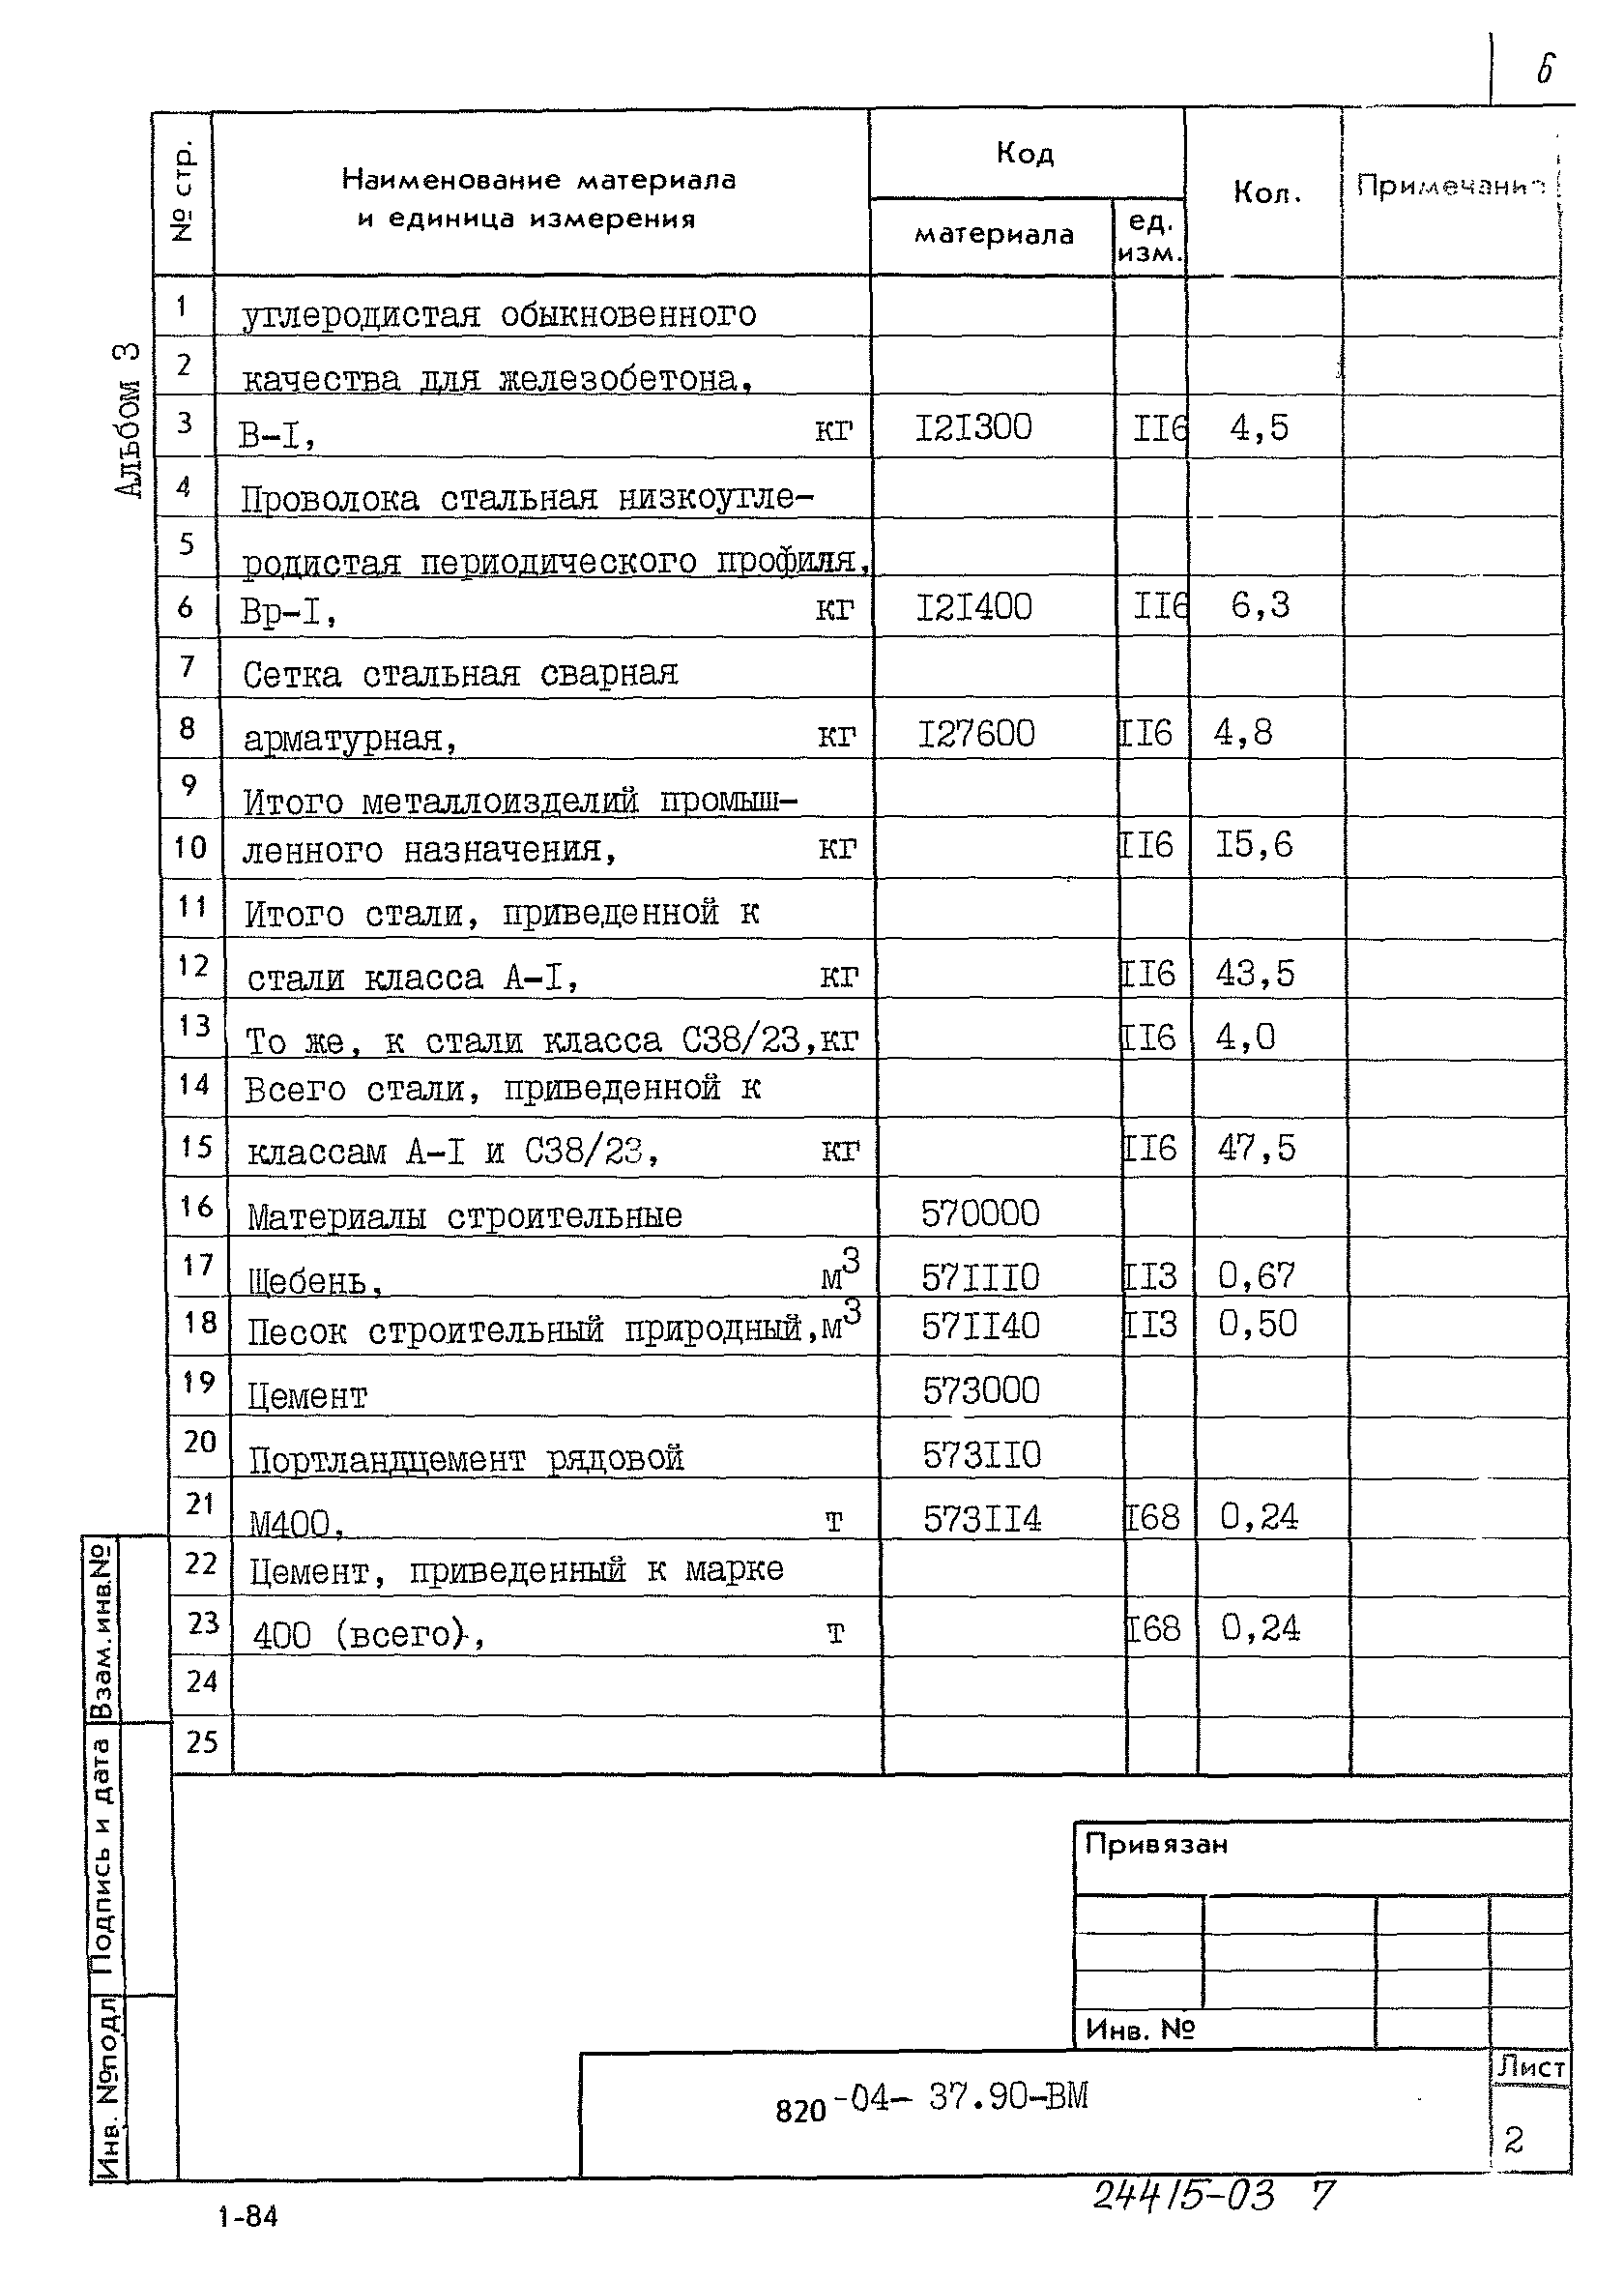 Типовые материалы для проектирования 820-04-37.90